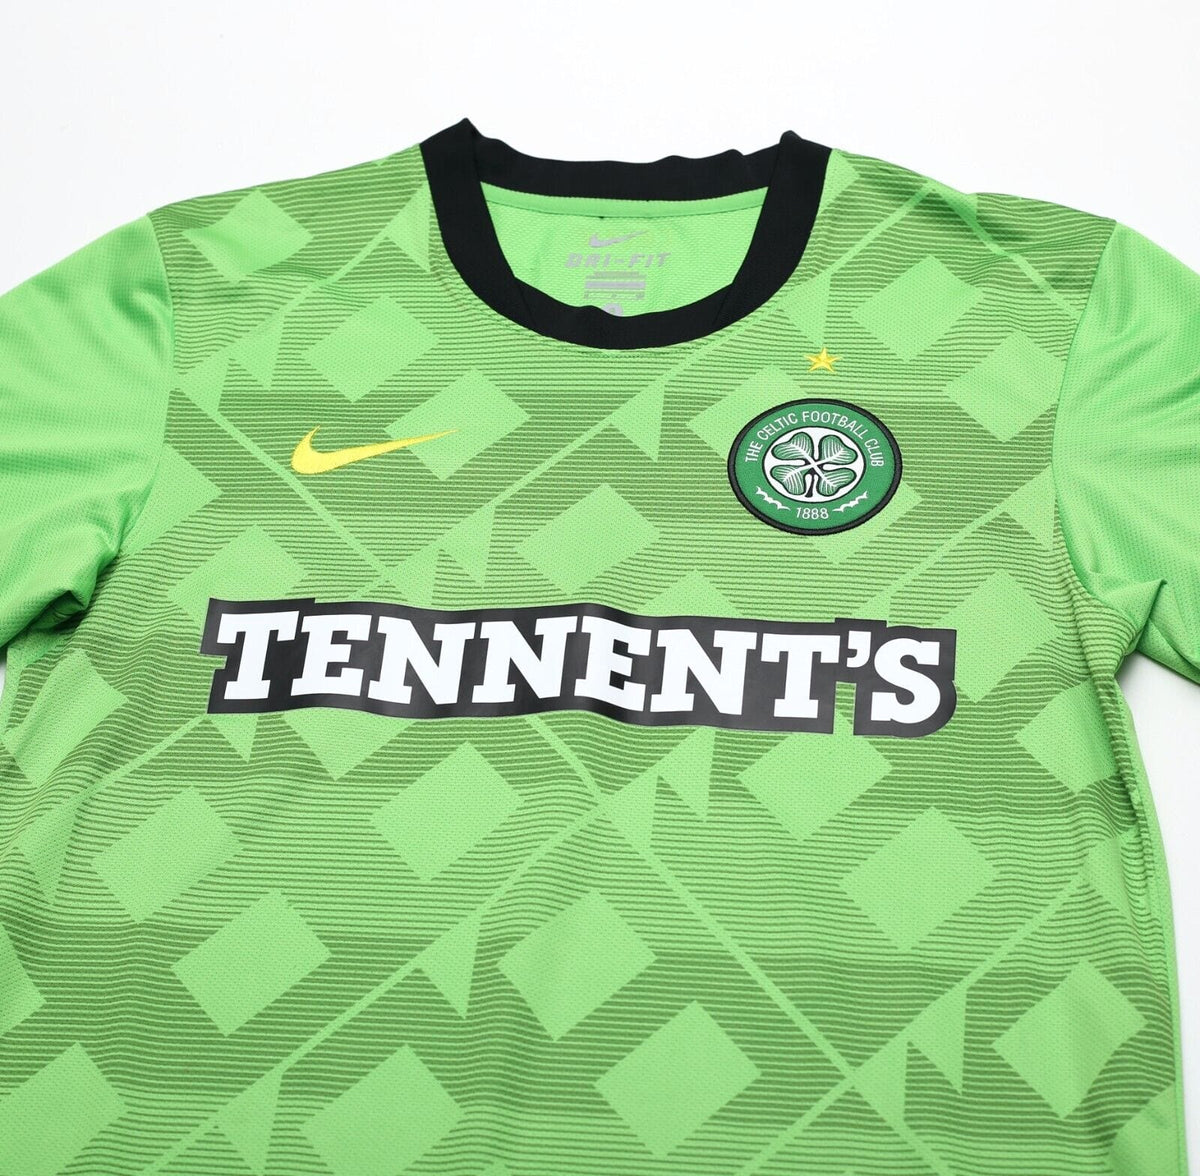 2010-11 Celtic Away Full Kit - NEW - (BABY)